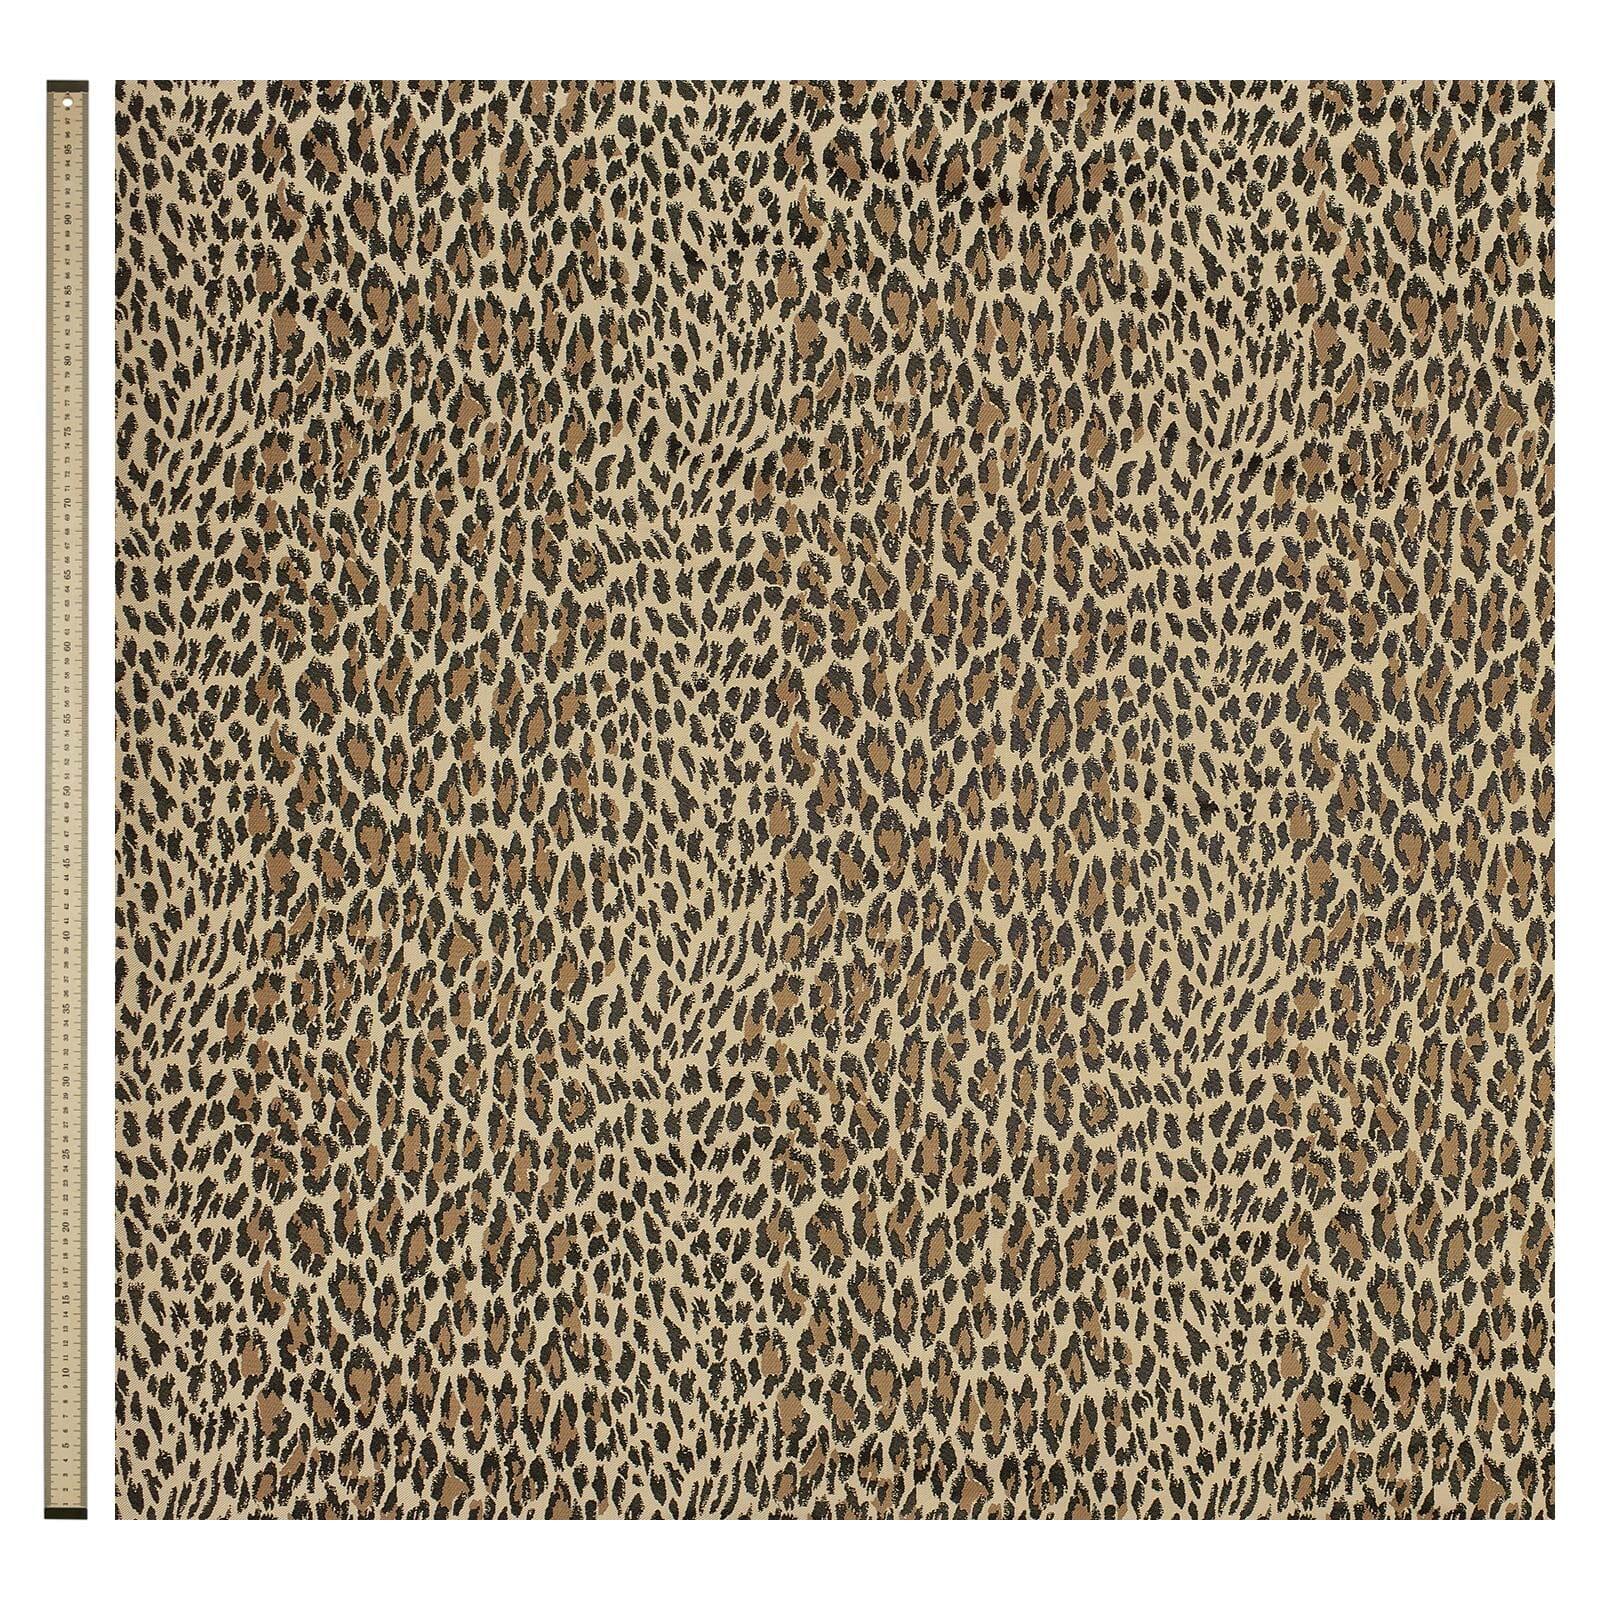 Le nouveau neutre, WILD CARD, est la réimagination par House of Hackney de la tache léopard classique, retravaillée à petite échelle pour un imprimé vraiment polyvalent. Un ajout intemporel à tout intérieur, ce jacquard de coton caramel apportera